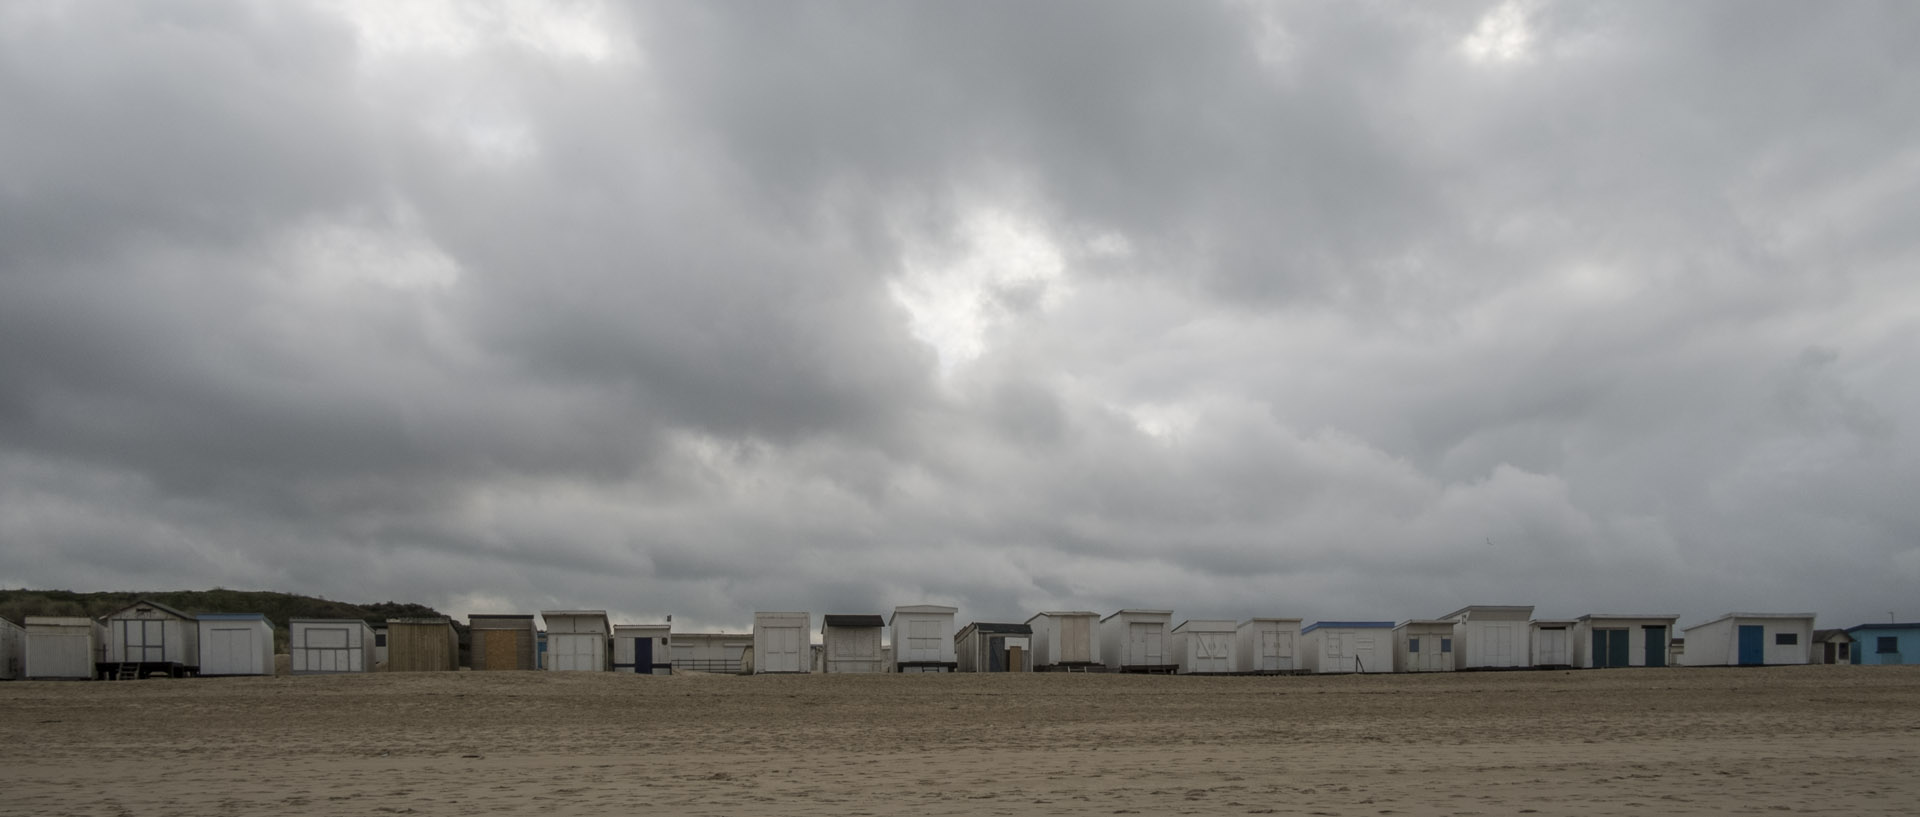 Mercredi 4 novembre 2015, 13:47, plage de Calais